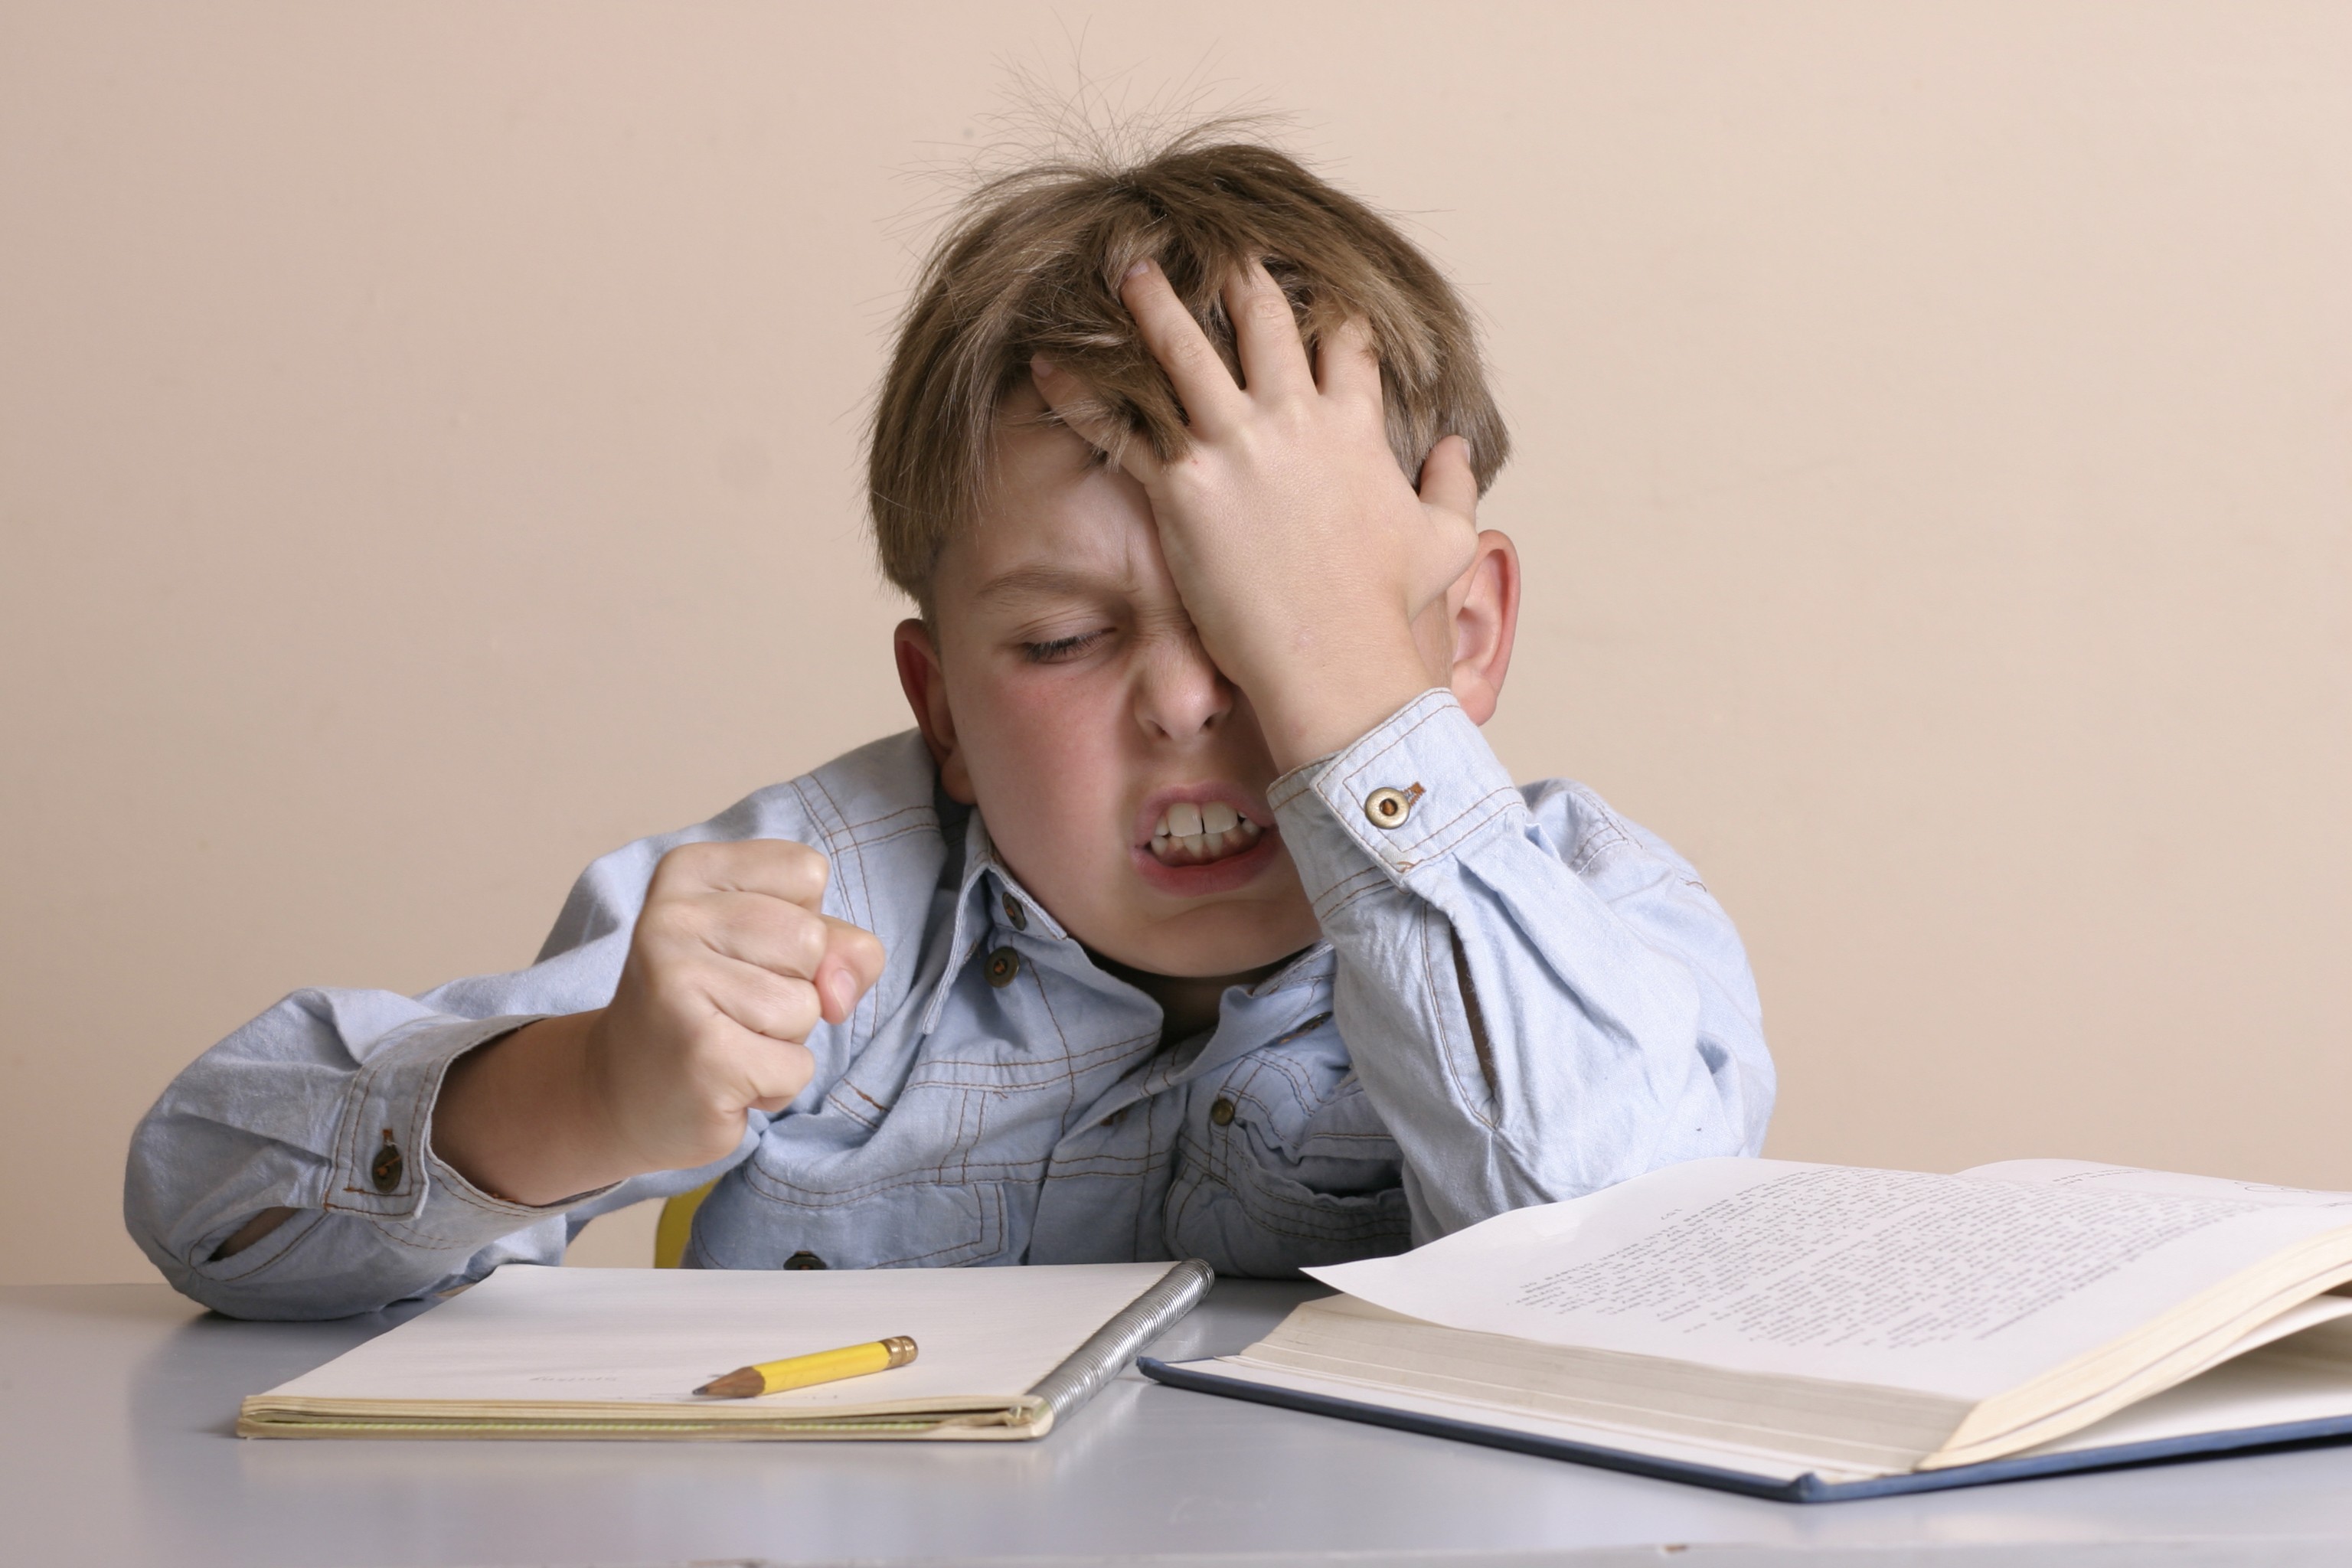 Criança que não gosta de estudar (Foto: Thinkstock)